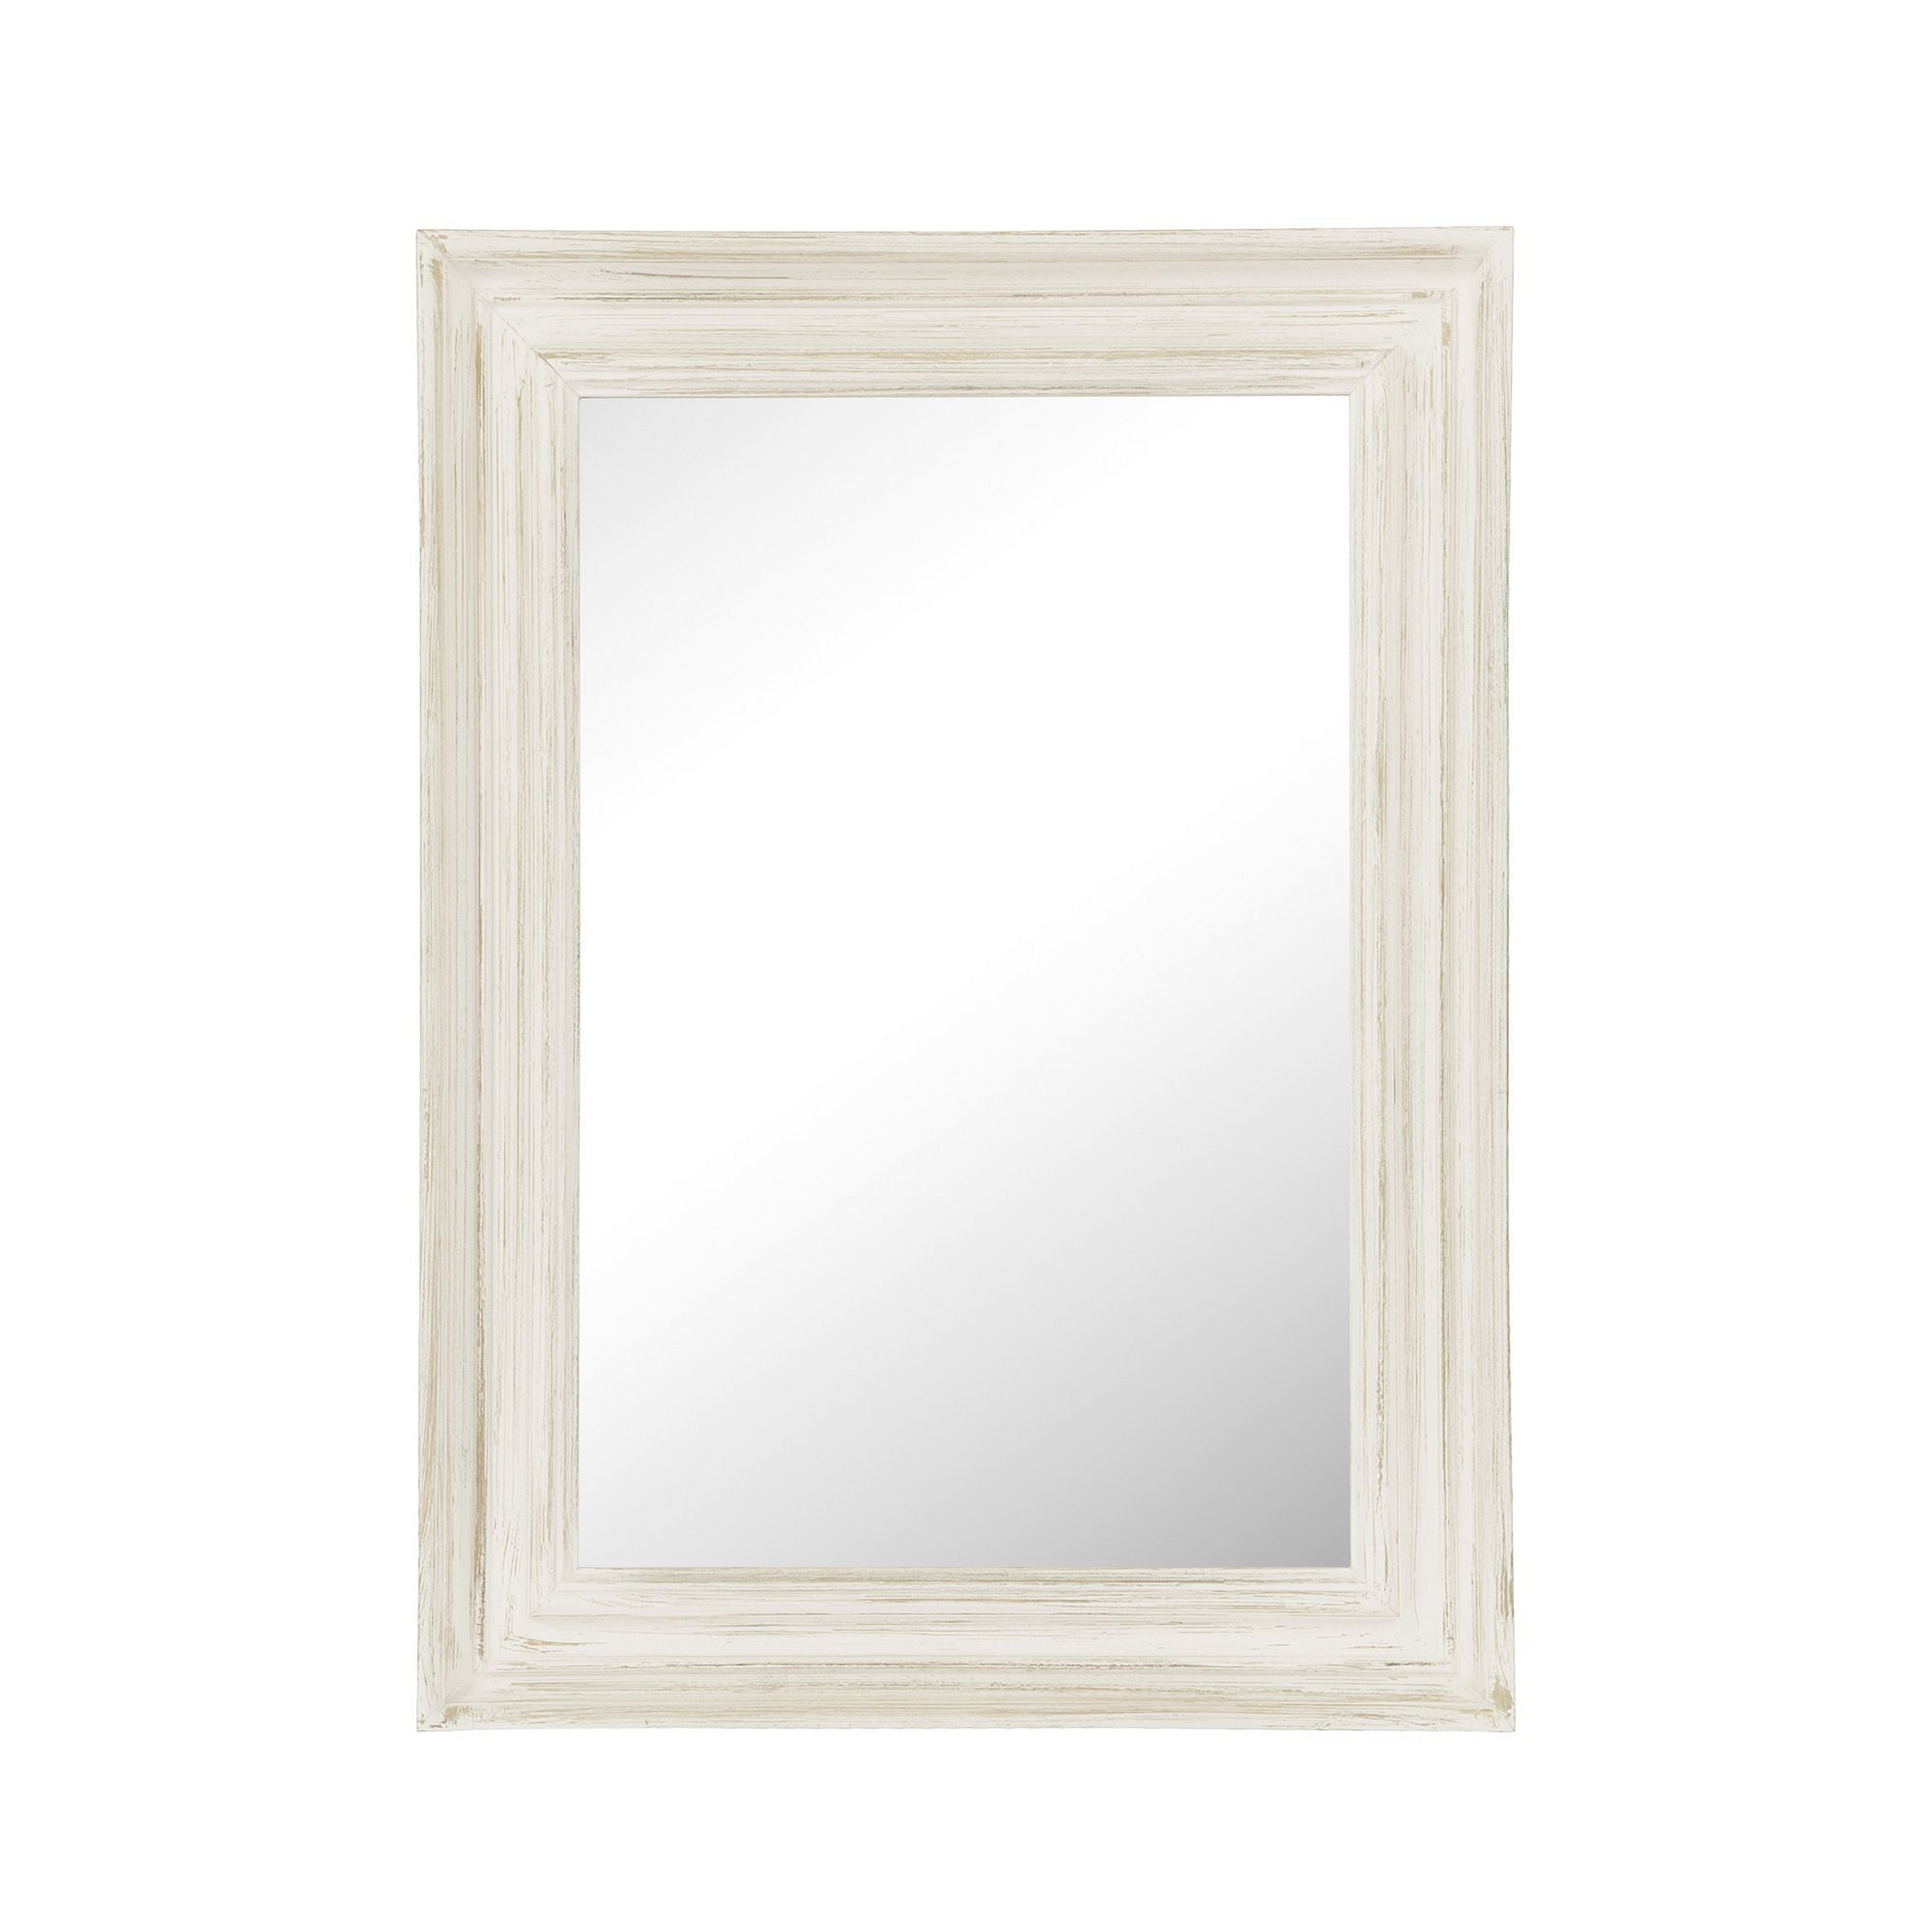 Whitewashed Rectangular Wall Mirror